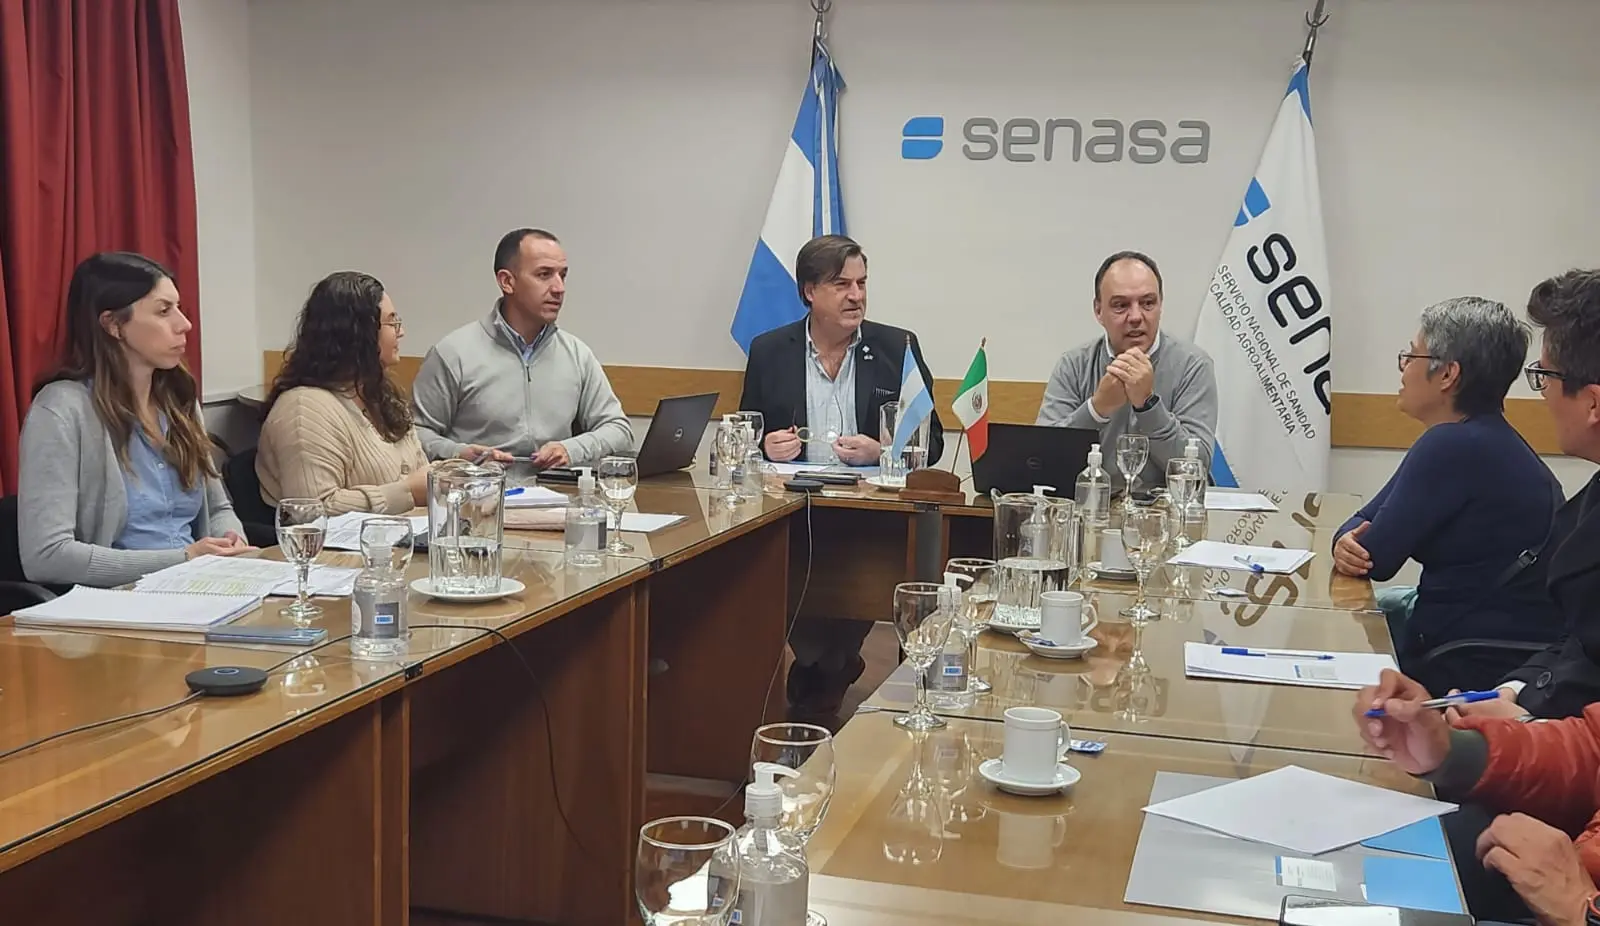 senasa podra auditar la destinacion o el establecimiento - Qué garantiza el Senasa en Argentina